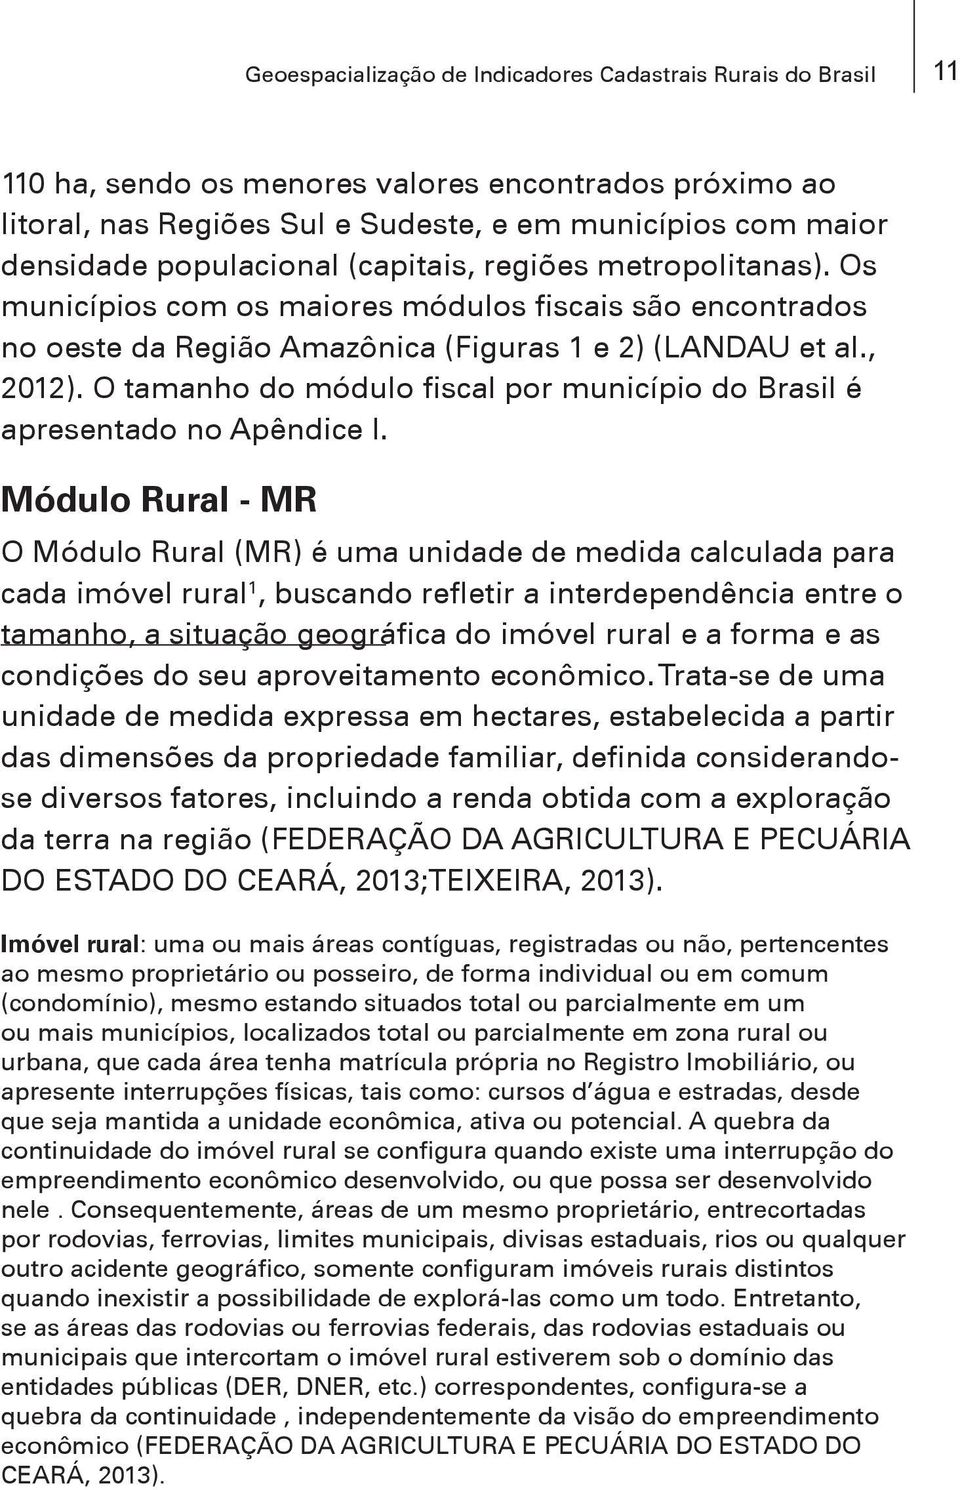 O tamanho do módulo fiscal por município do Brasil é apresentado no Apêndice I.